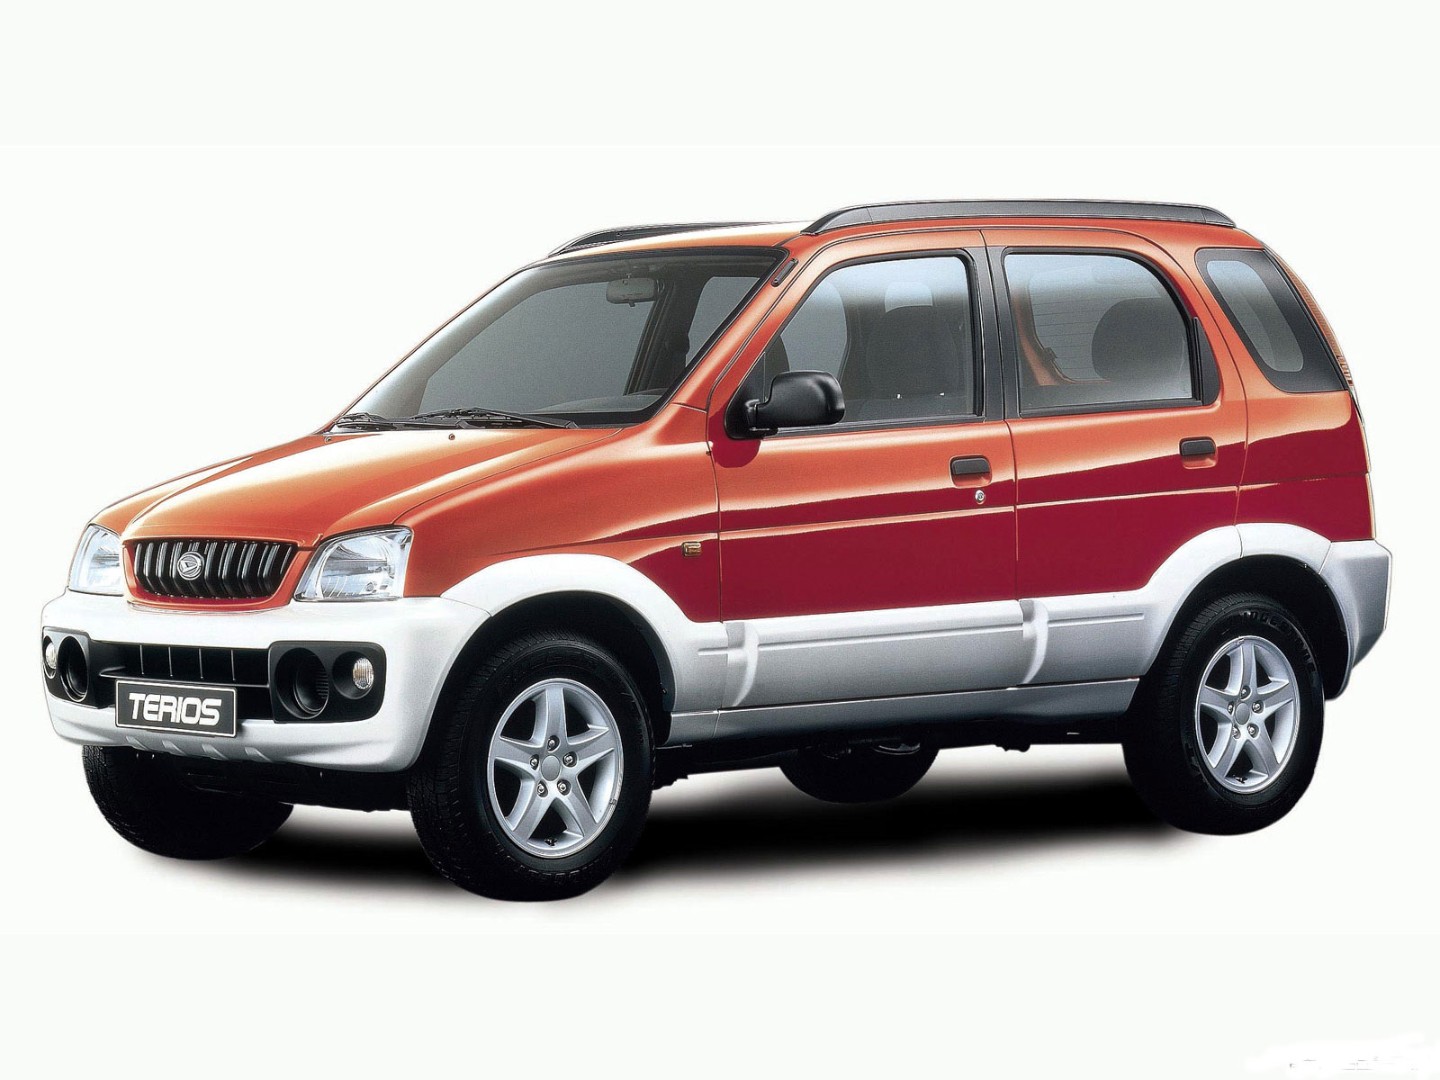 Daihatsu Terios (J100), 1997-2006